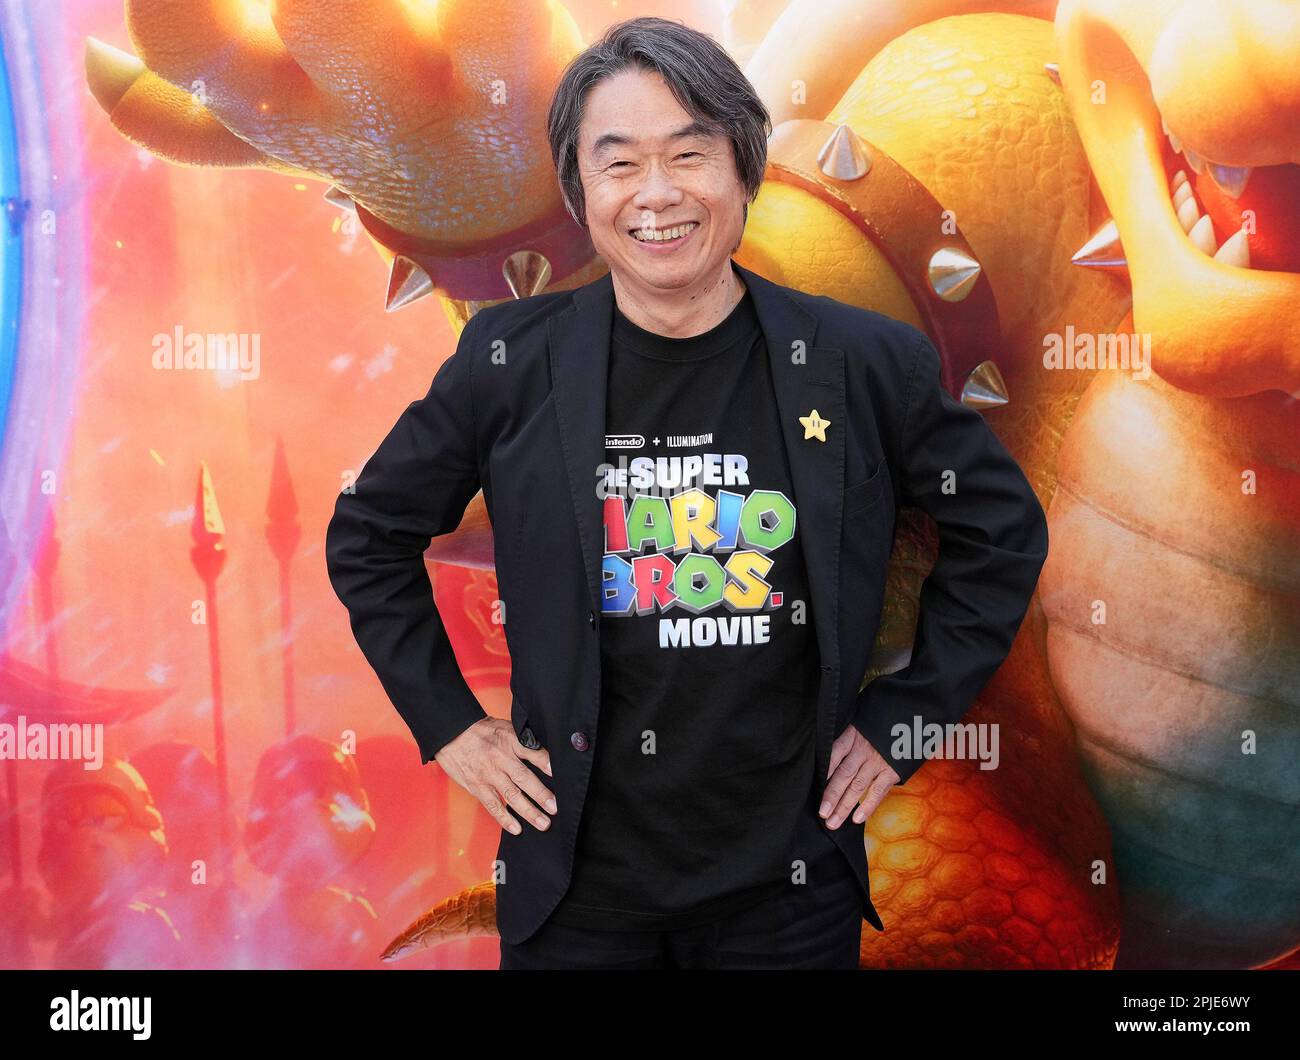 Los Angeles, USA. 02nd Apr, 2023. Chris Melendandri, Shigeru Miyamoto at  The Super Mario Bros. Movie Special Screening held at the Regal LA Live,  Los Angeles, CA, April 1, 2023. Photo Credit